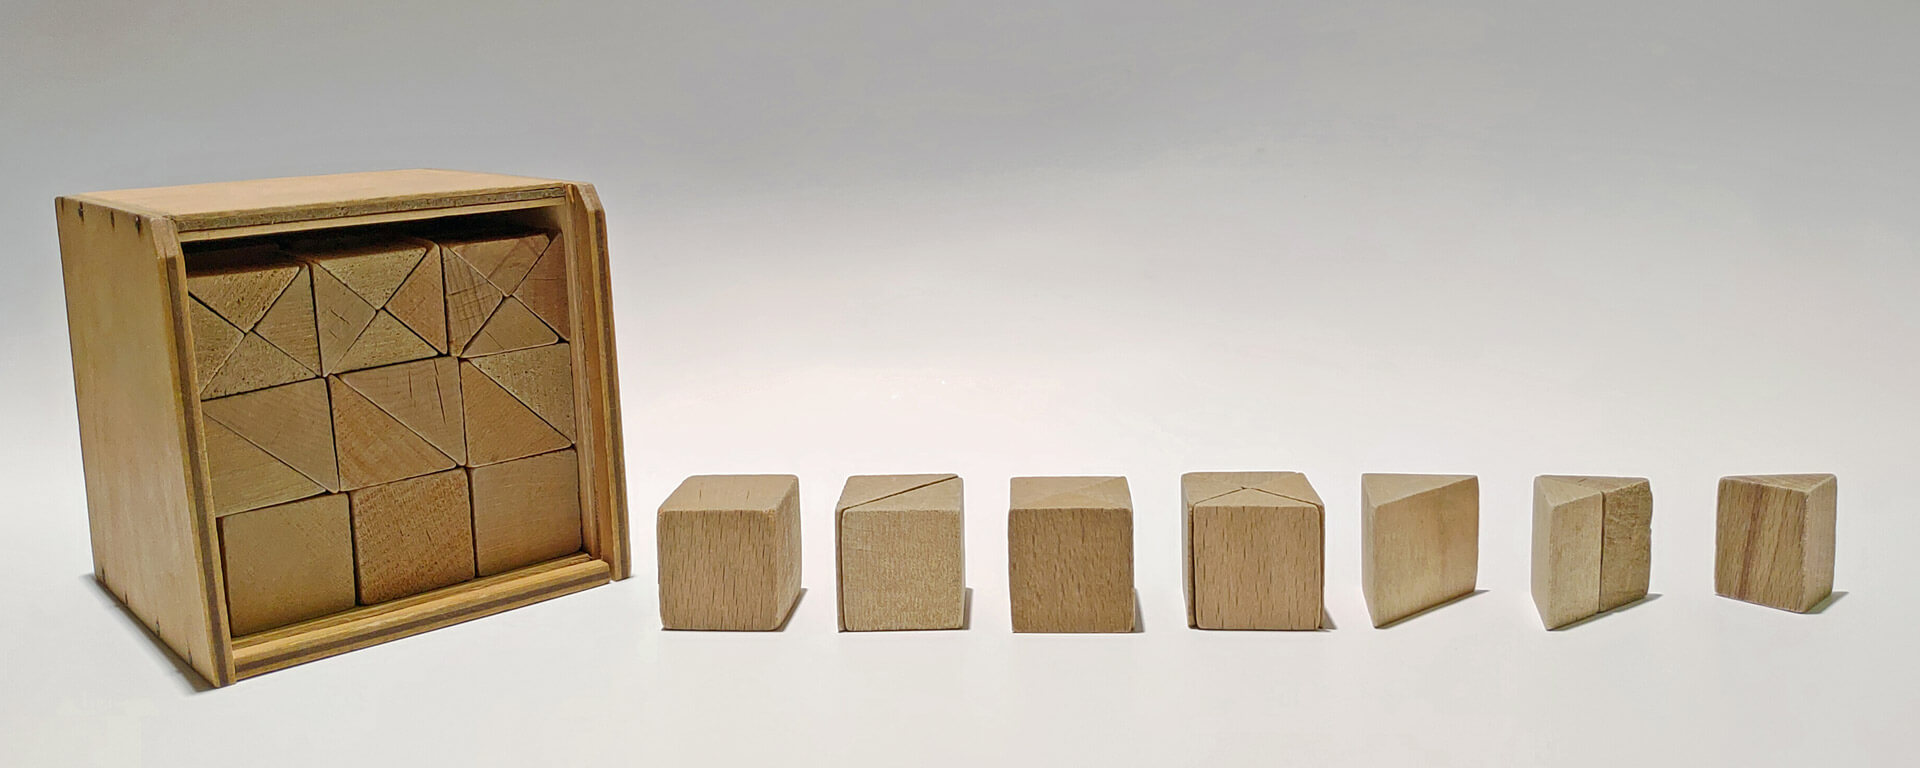 Kuvassa vasemmalla on Fröbelin 5. lahja kokonaisuudessaan. Oikealla puolella on kyseisen lahjan eri muotoja aseteltuna erilaisiin kokoonpanoihin, jotka muodostavat kuution osia.